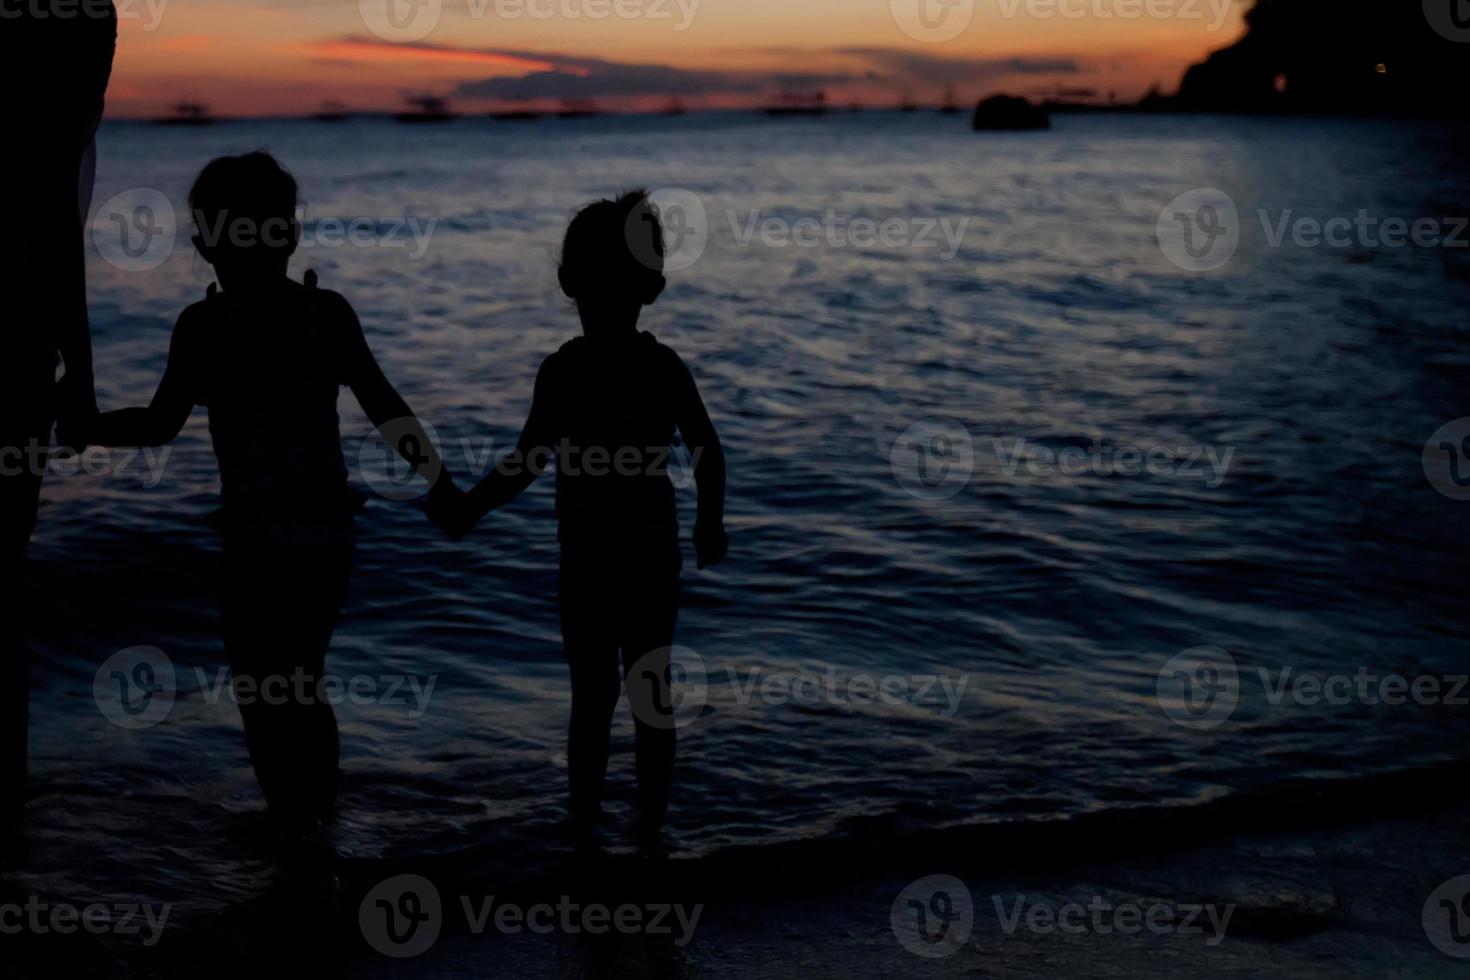 famille de trois silhouette au coucher du soleil sur la plage de boracay photo